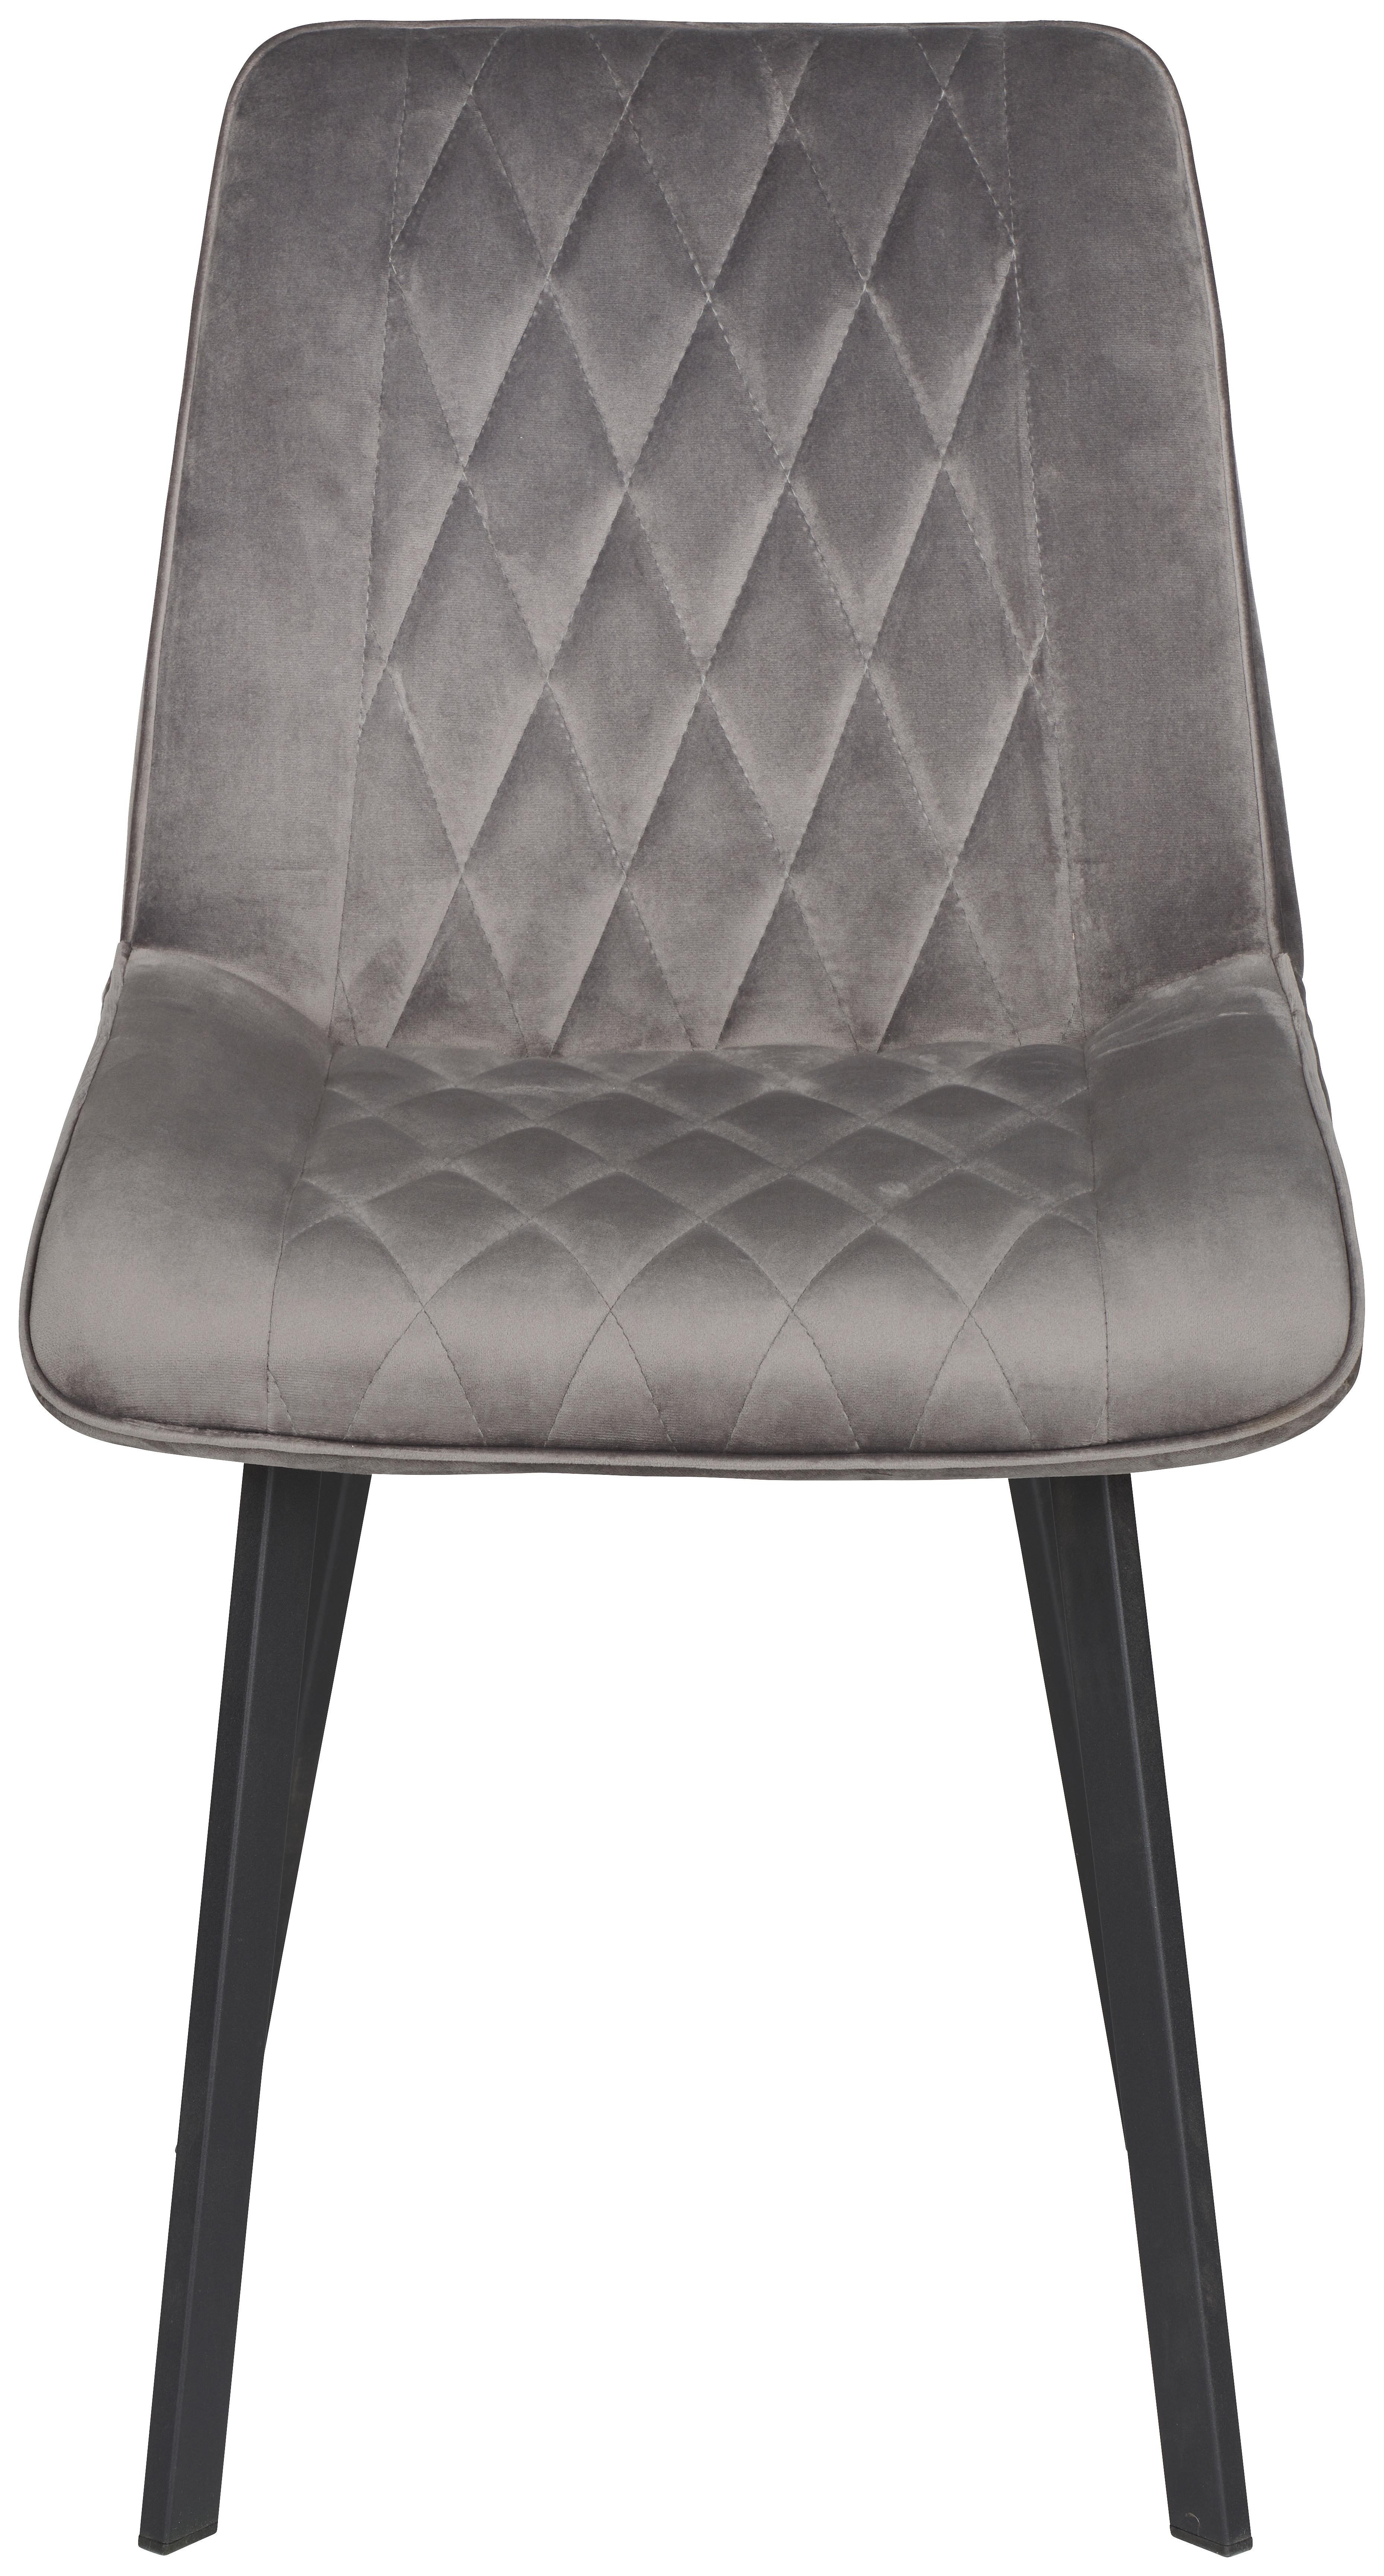 Čtyřnohá Židle Bella - šedá/černá, Konvenční, kov/dřevo (51/87/62cm)